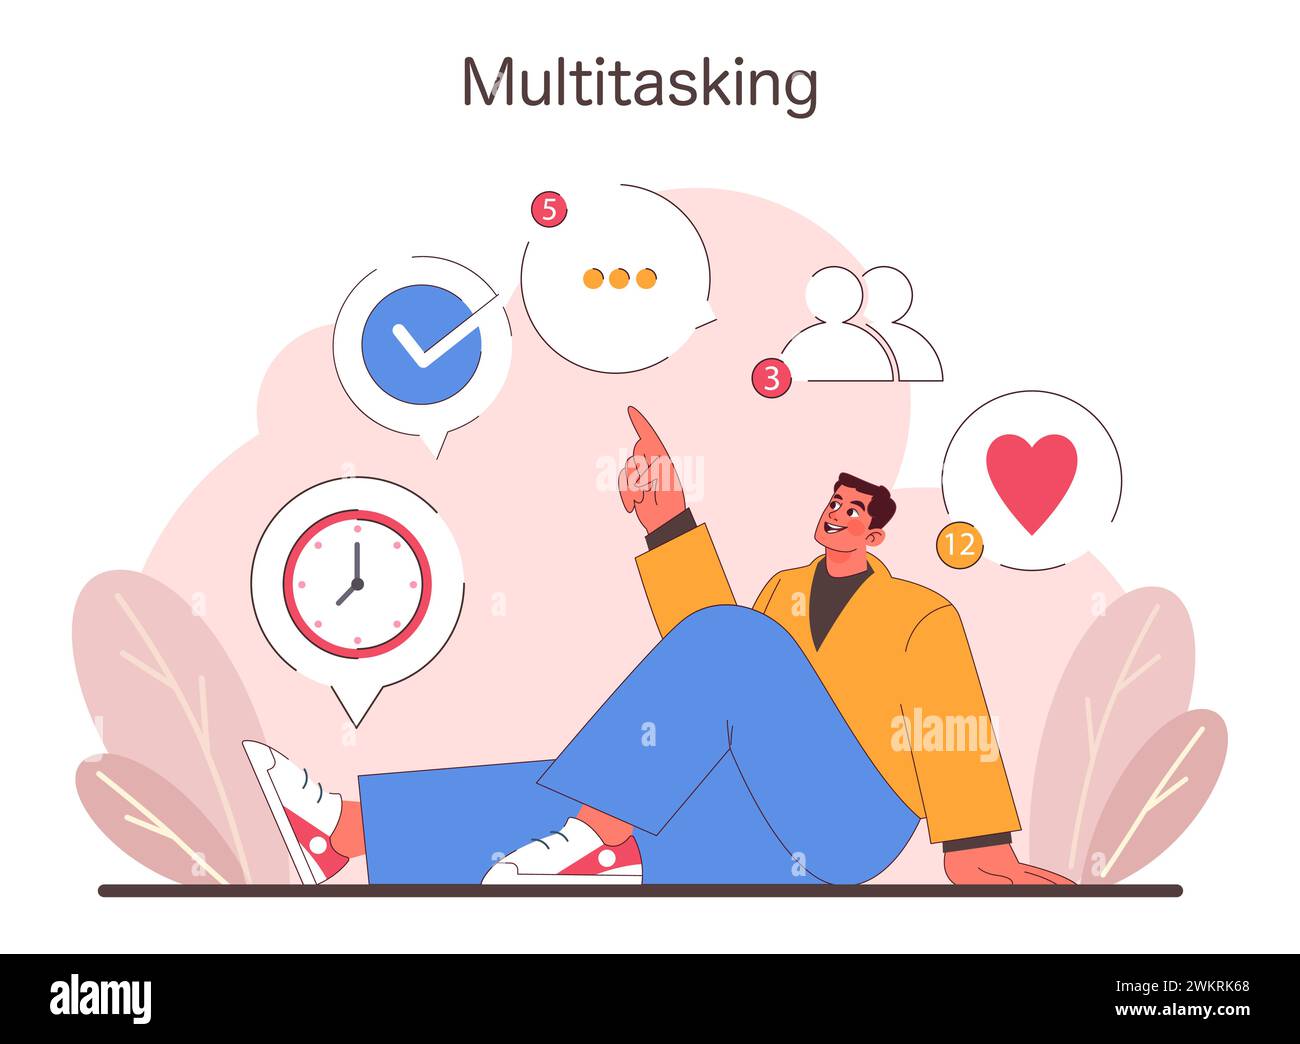 Multitasking-Konzept. Gelegenheitsmann managen mühelos Zeit, soziale Interaktion und persönliche Ziele. Einfaches und effizientes Arbeiten. Illustration des flachen Vektors Stock Vektor